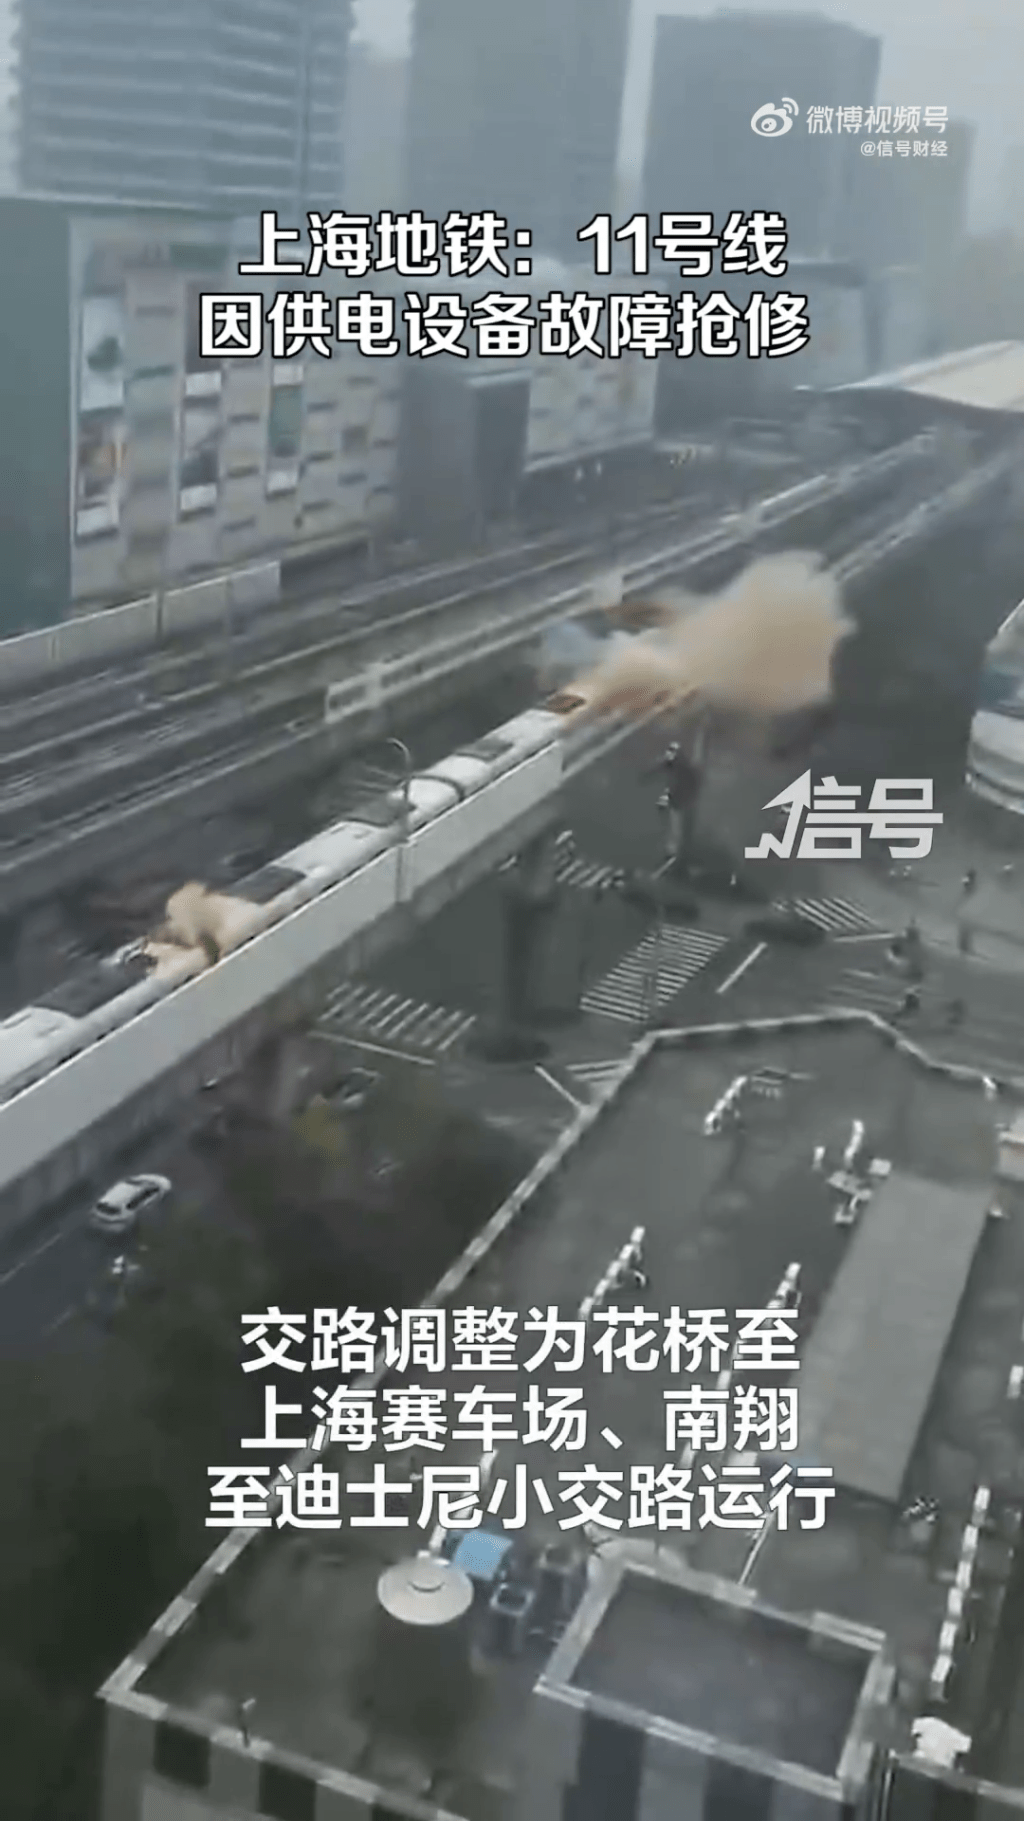 上海地铁11号线故障现场冒出大量白烟。